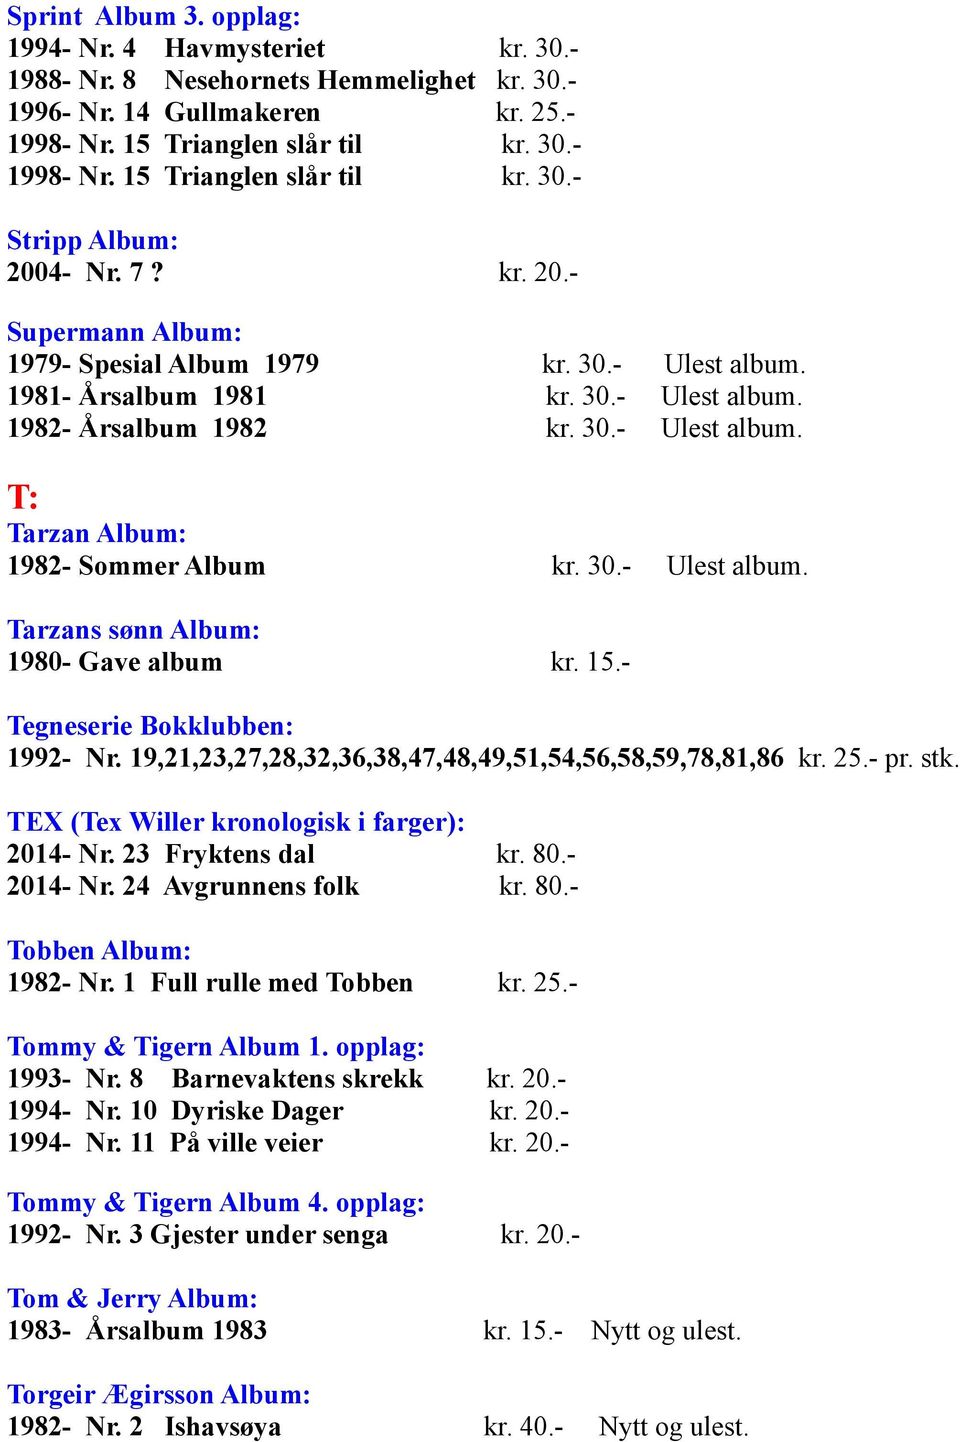 30.- Ulest album. Tarzans sønn Album: 1980- Gave album kr. 15.- Tegneserie Bokklubben: 1992- Nr. 19,21,23,27,28,32,36,38,47,48,49,51,54,56,58,59,78,81,86 kr. 25.- pr. stk.